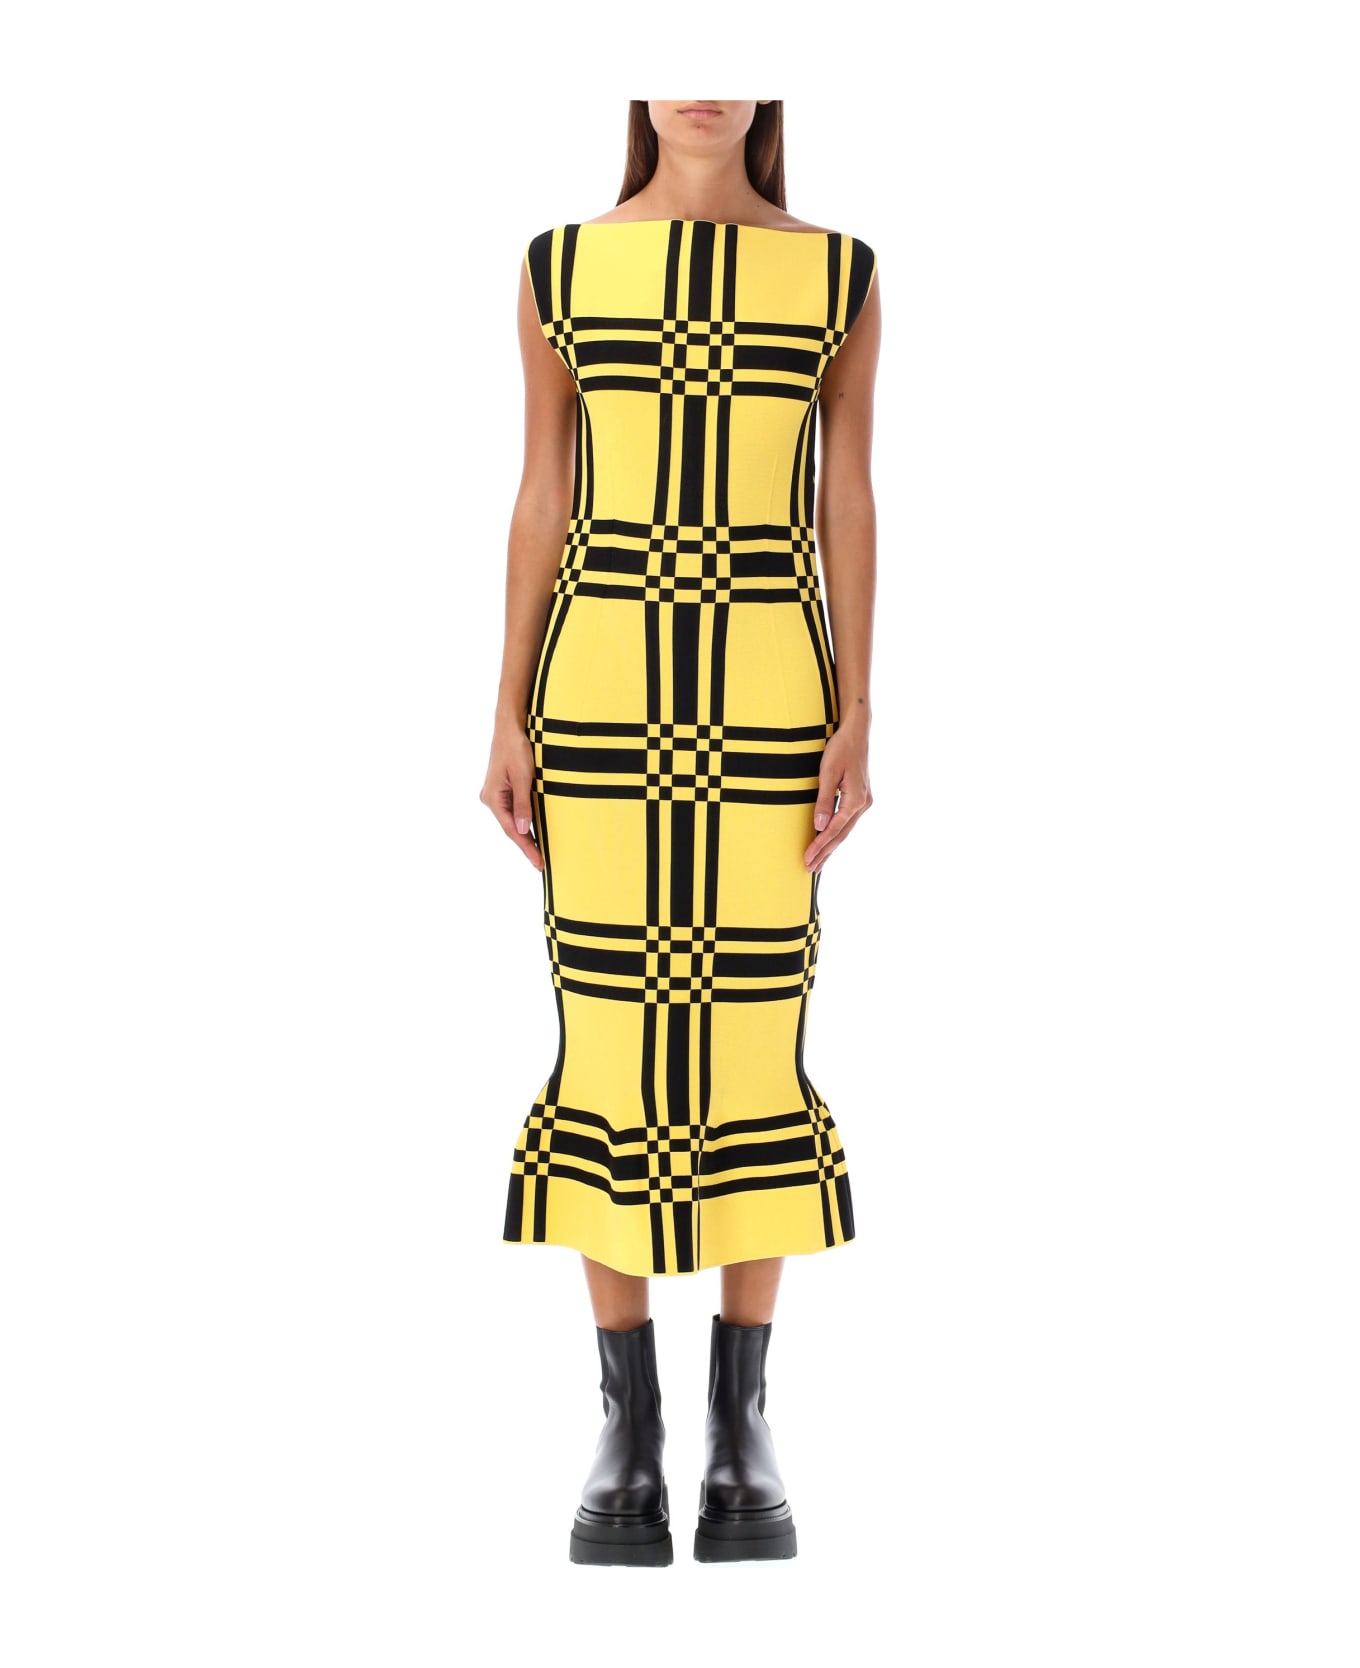 Marni Sleeveless Dress Check - YELLOW/BLACK